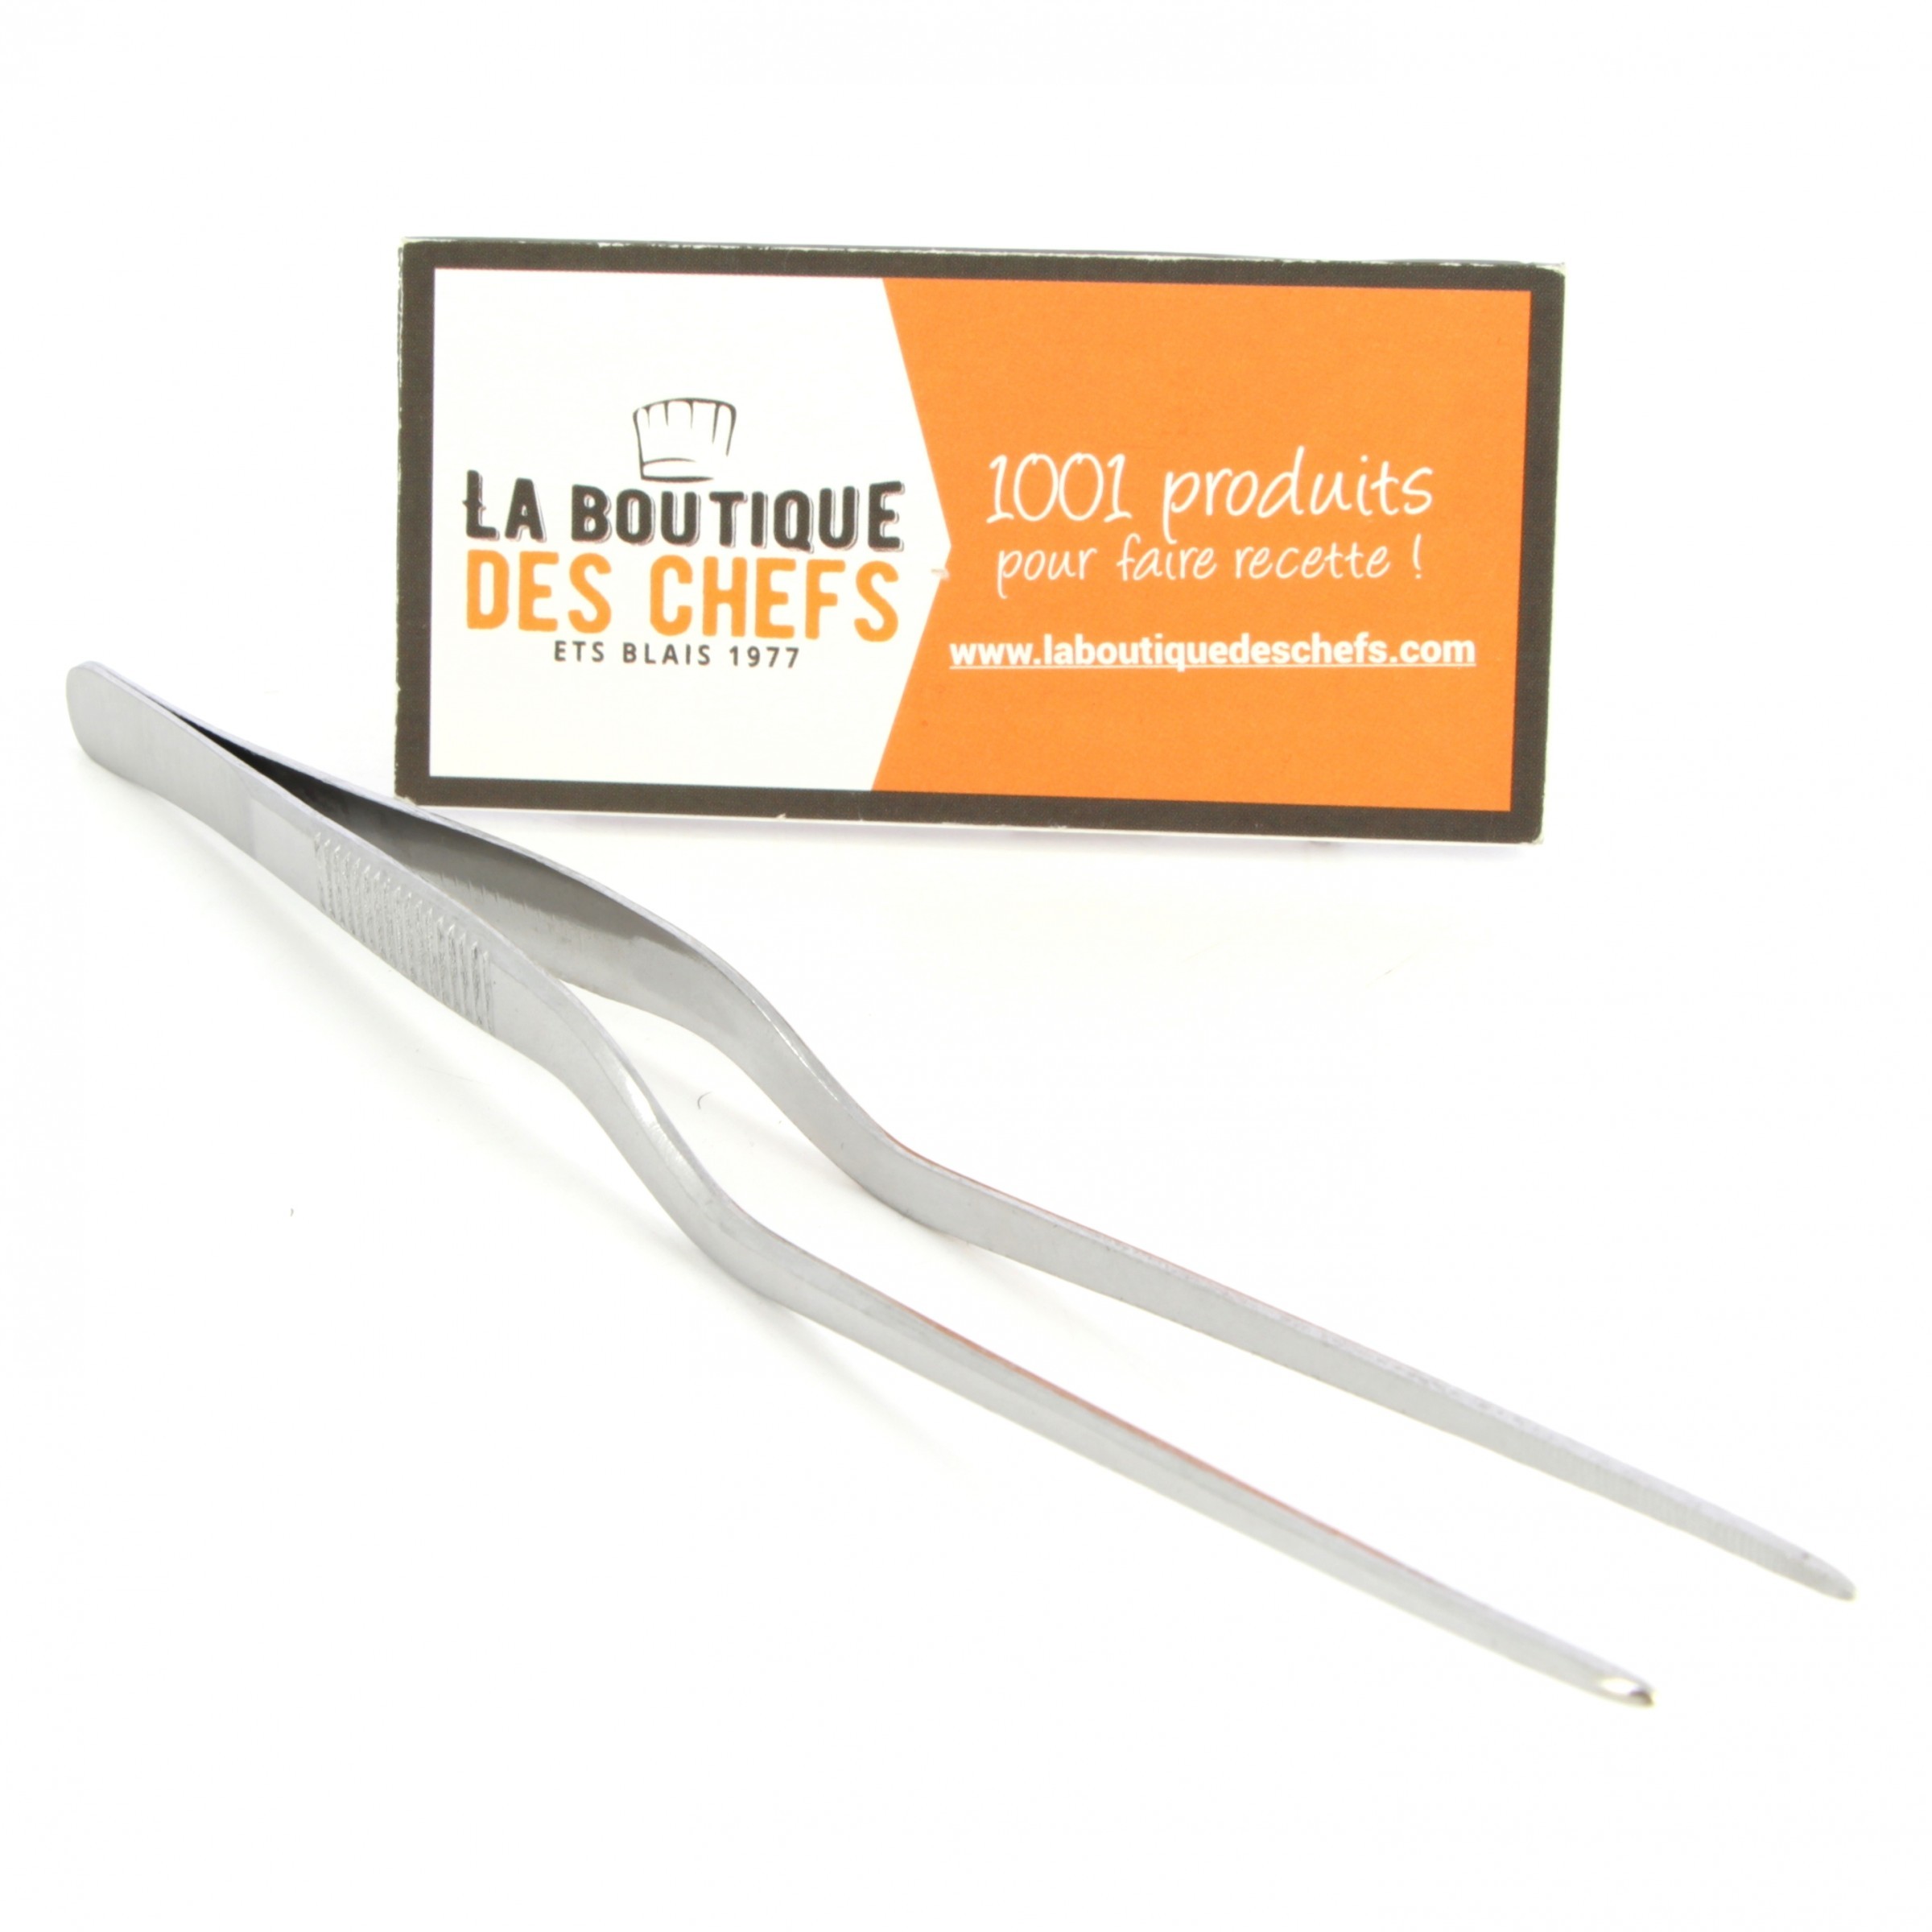 Pince de cuisine multi service en inox longueur 30 cm - Matfer-Bourgeat